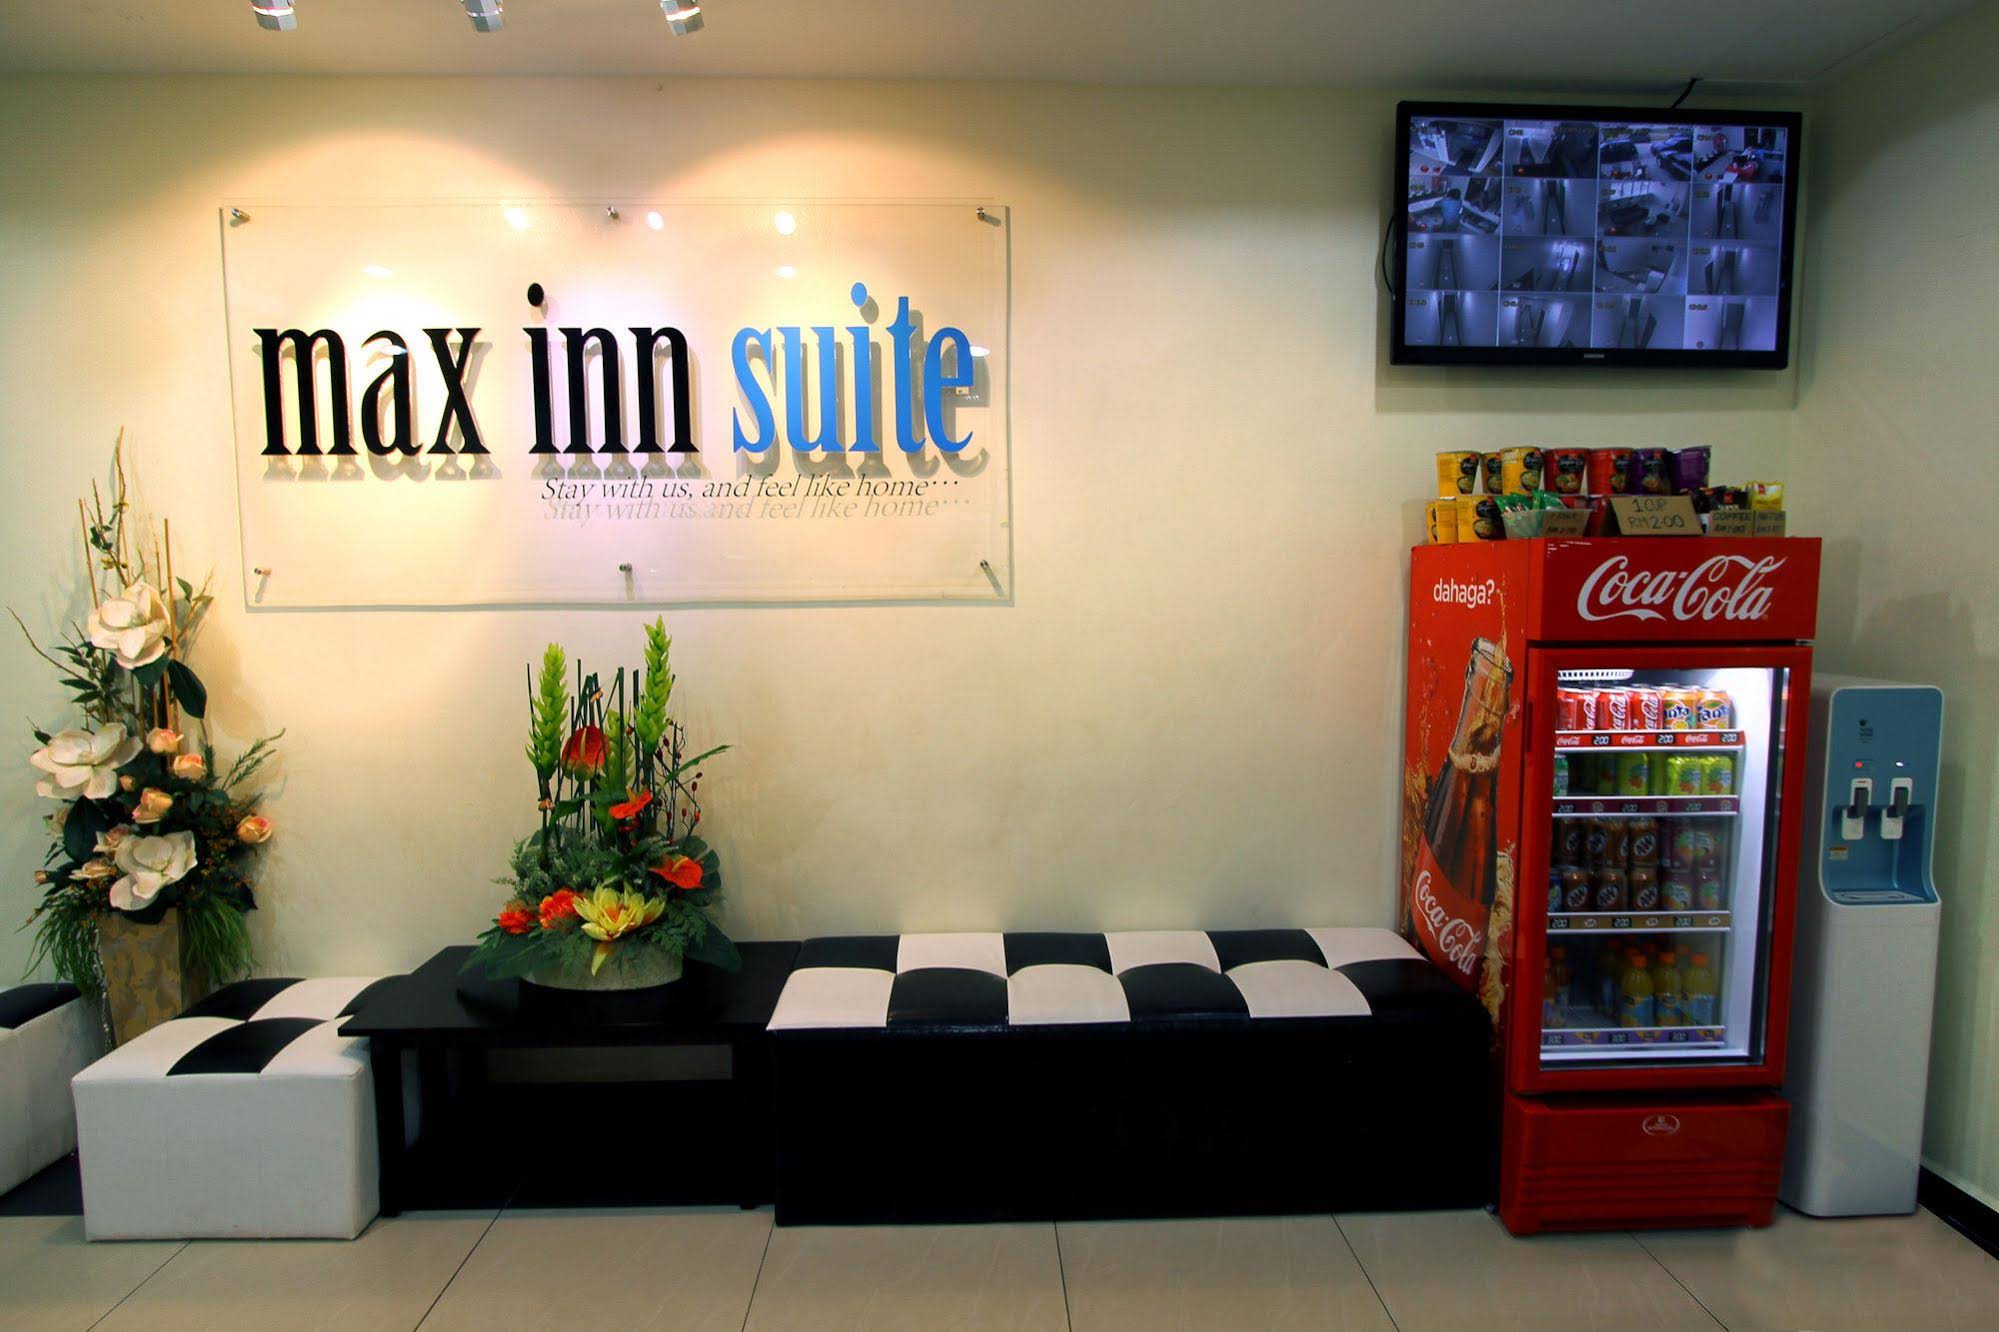 Max Inn